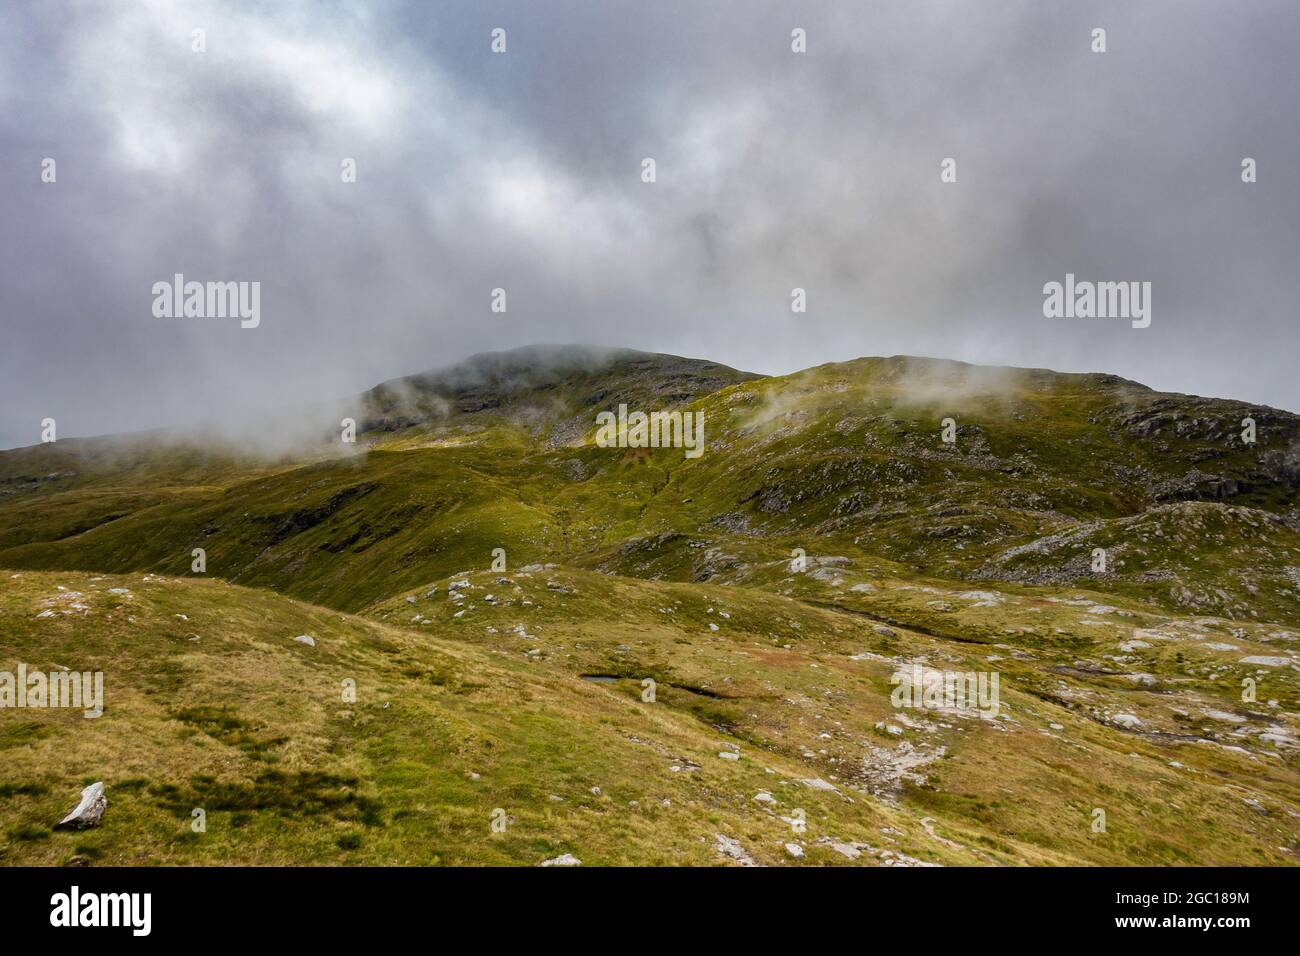 La montagne Munro de Ben OSS près de Tyndrum, près de Stirling, en Écosse, qui se trouve dans le Loch Lomond et le parc national de Trossachs Banque D'Images